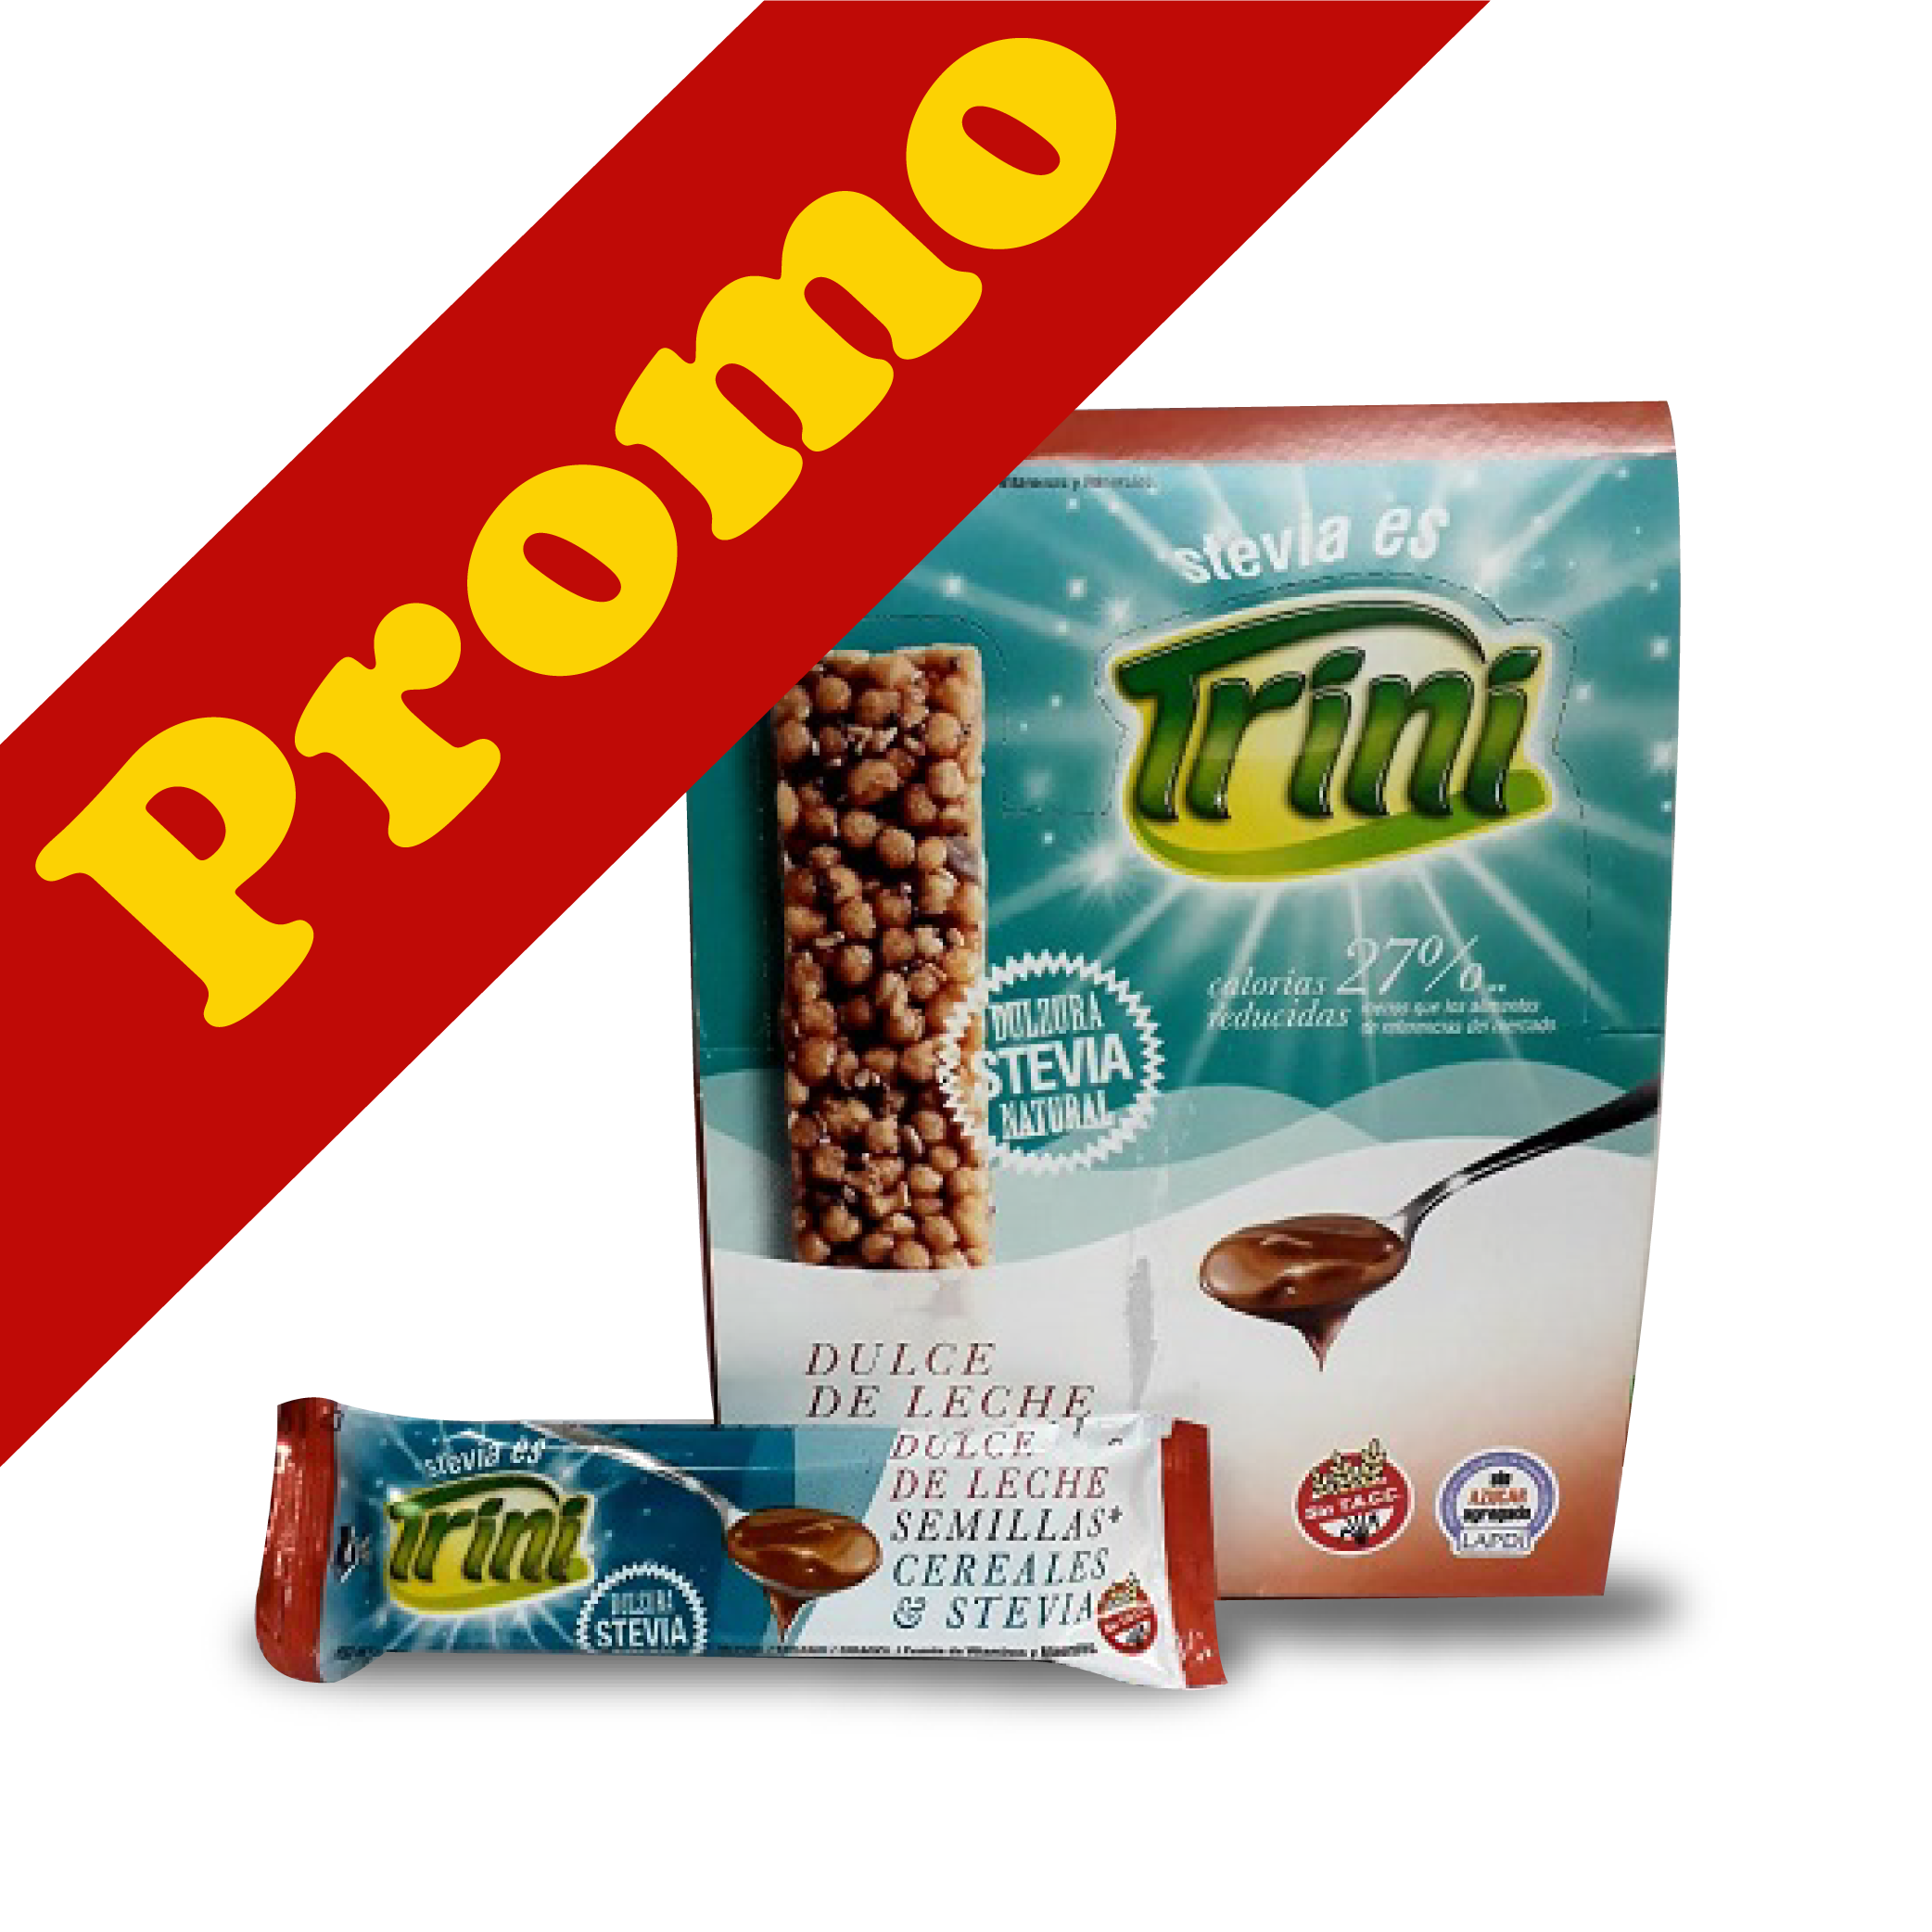 TRINI - Barra de Cereal Dulce de Leche PROMO 3 x 20 unds SIN TACC